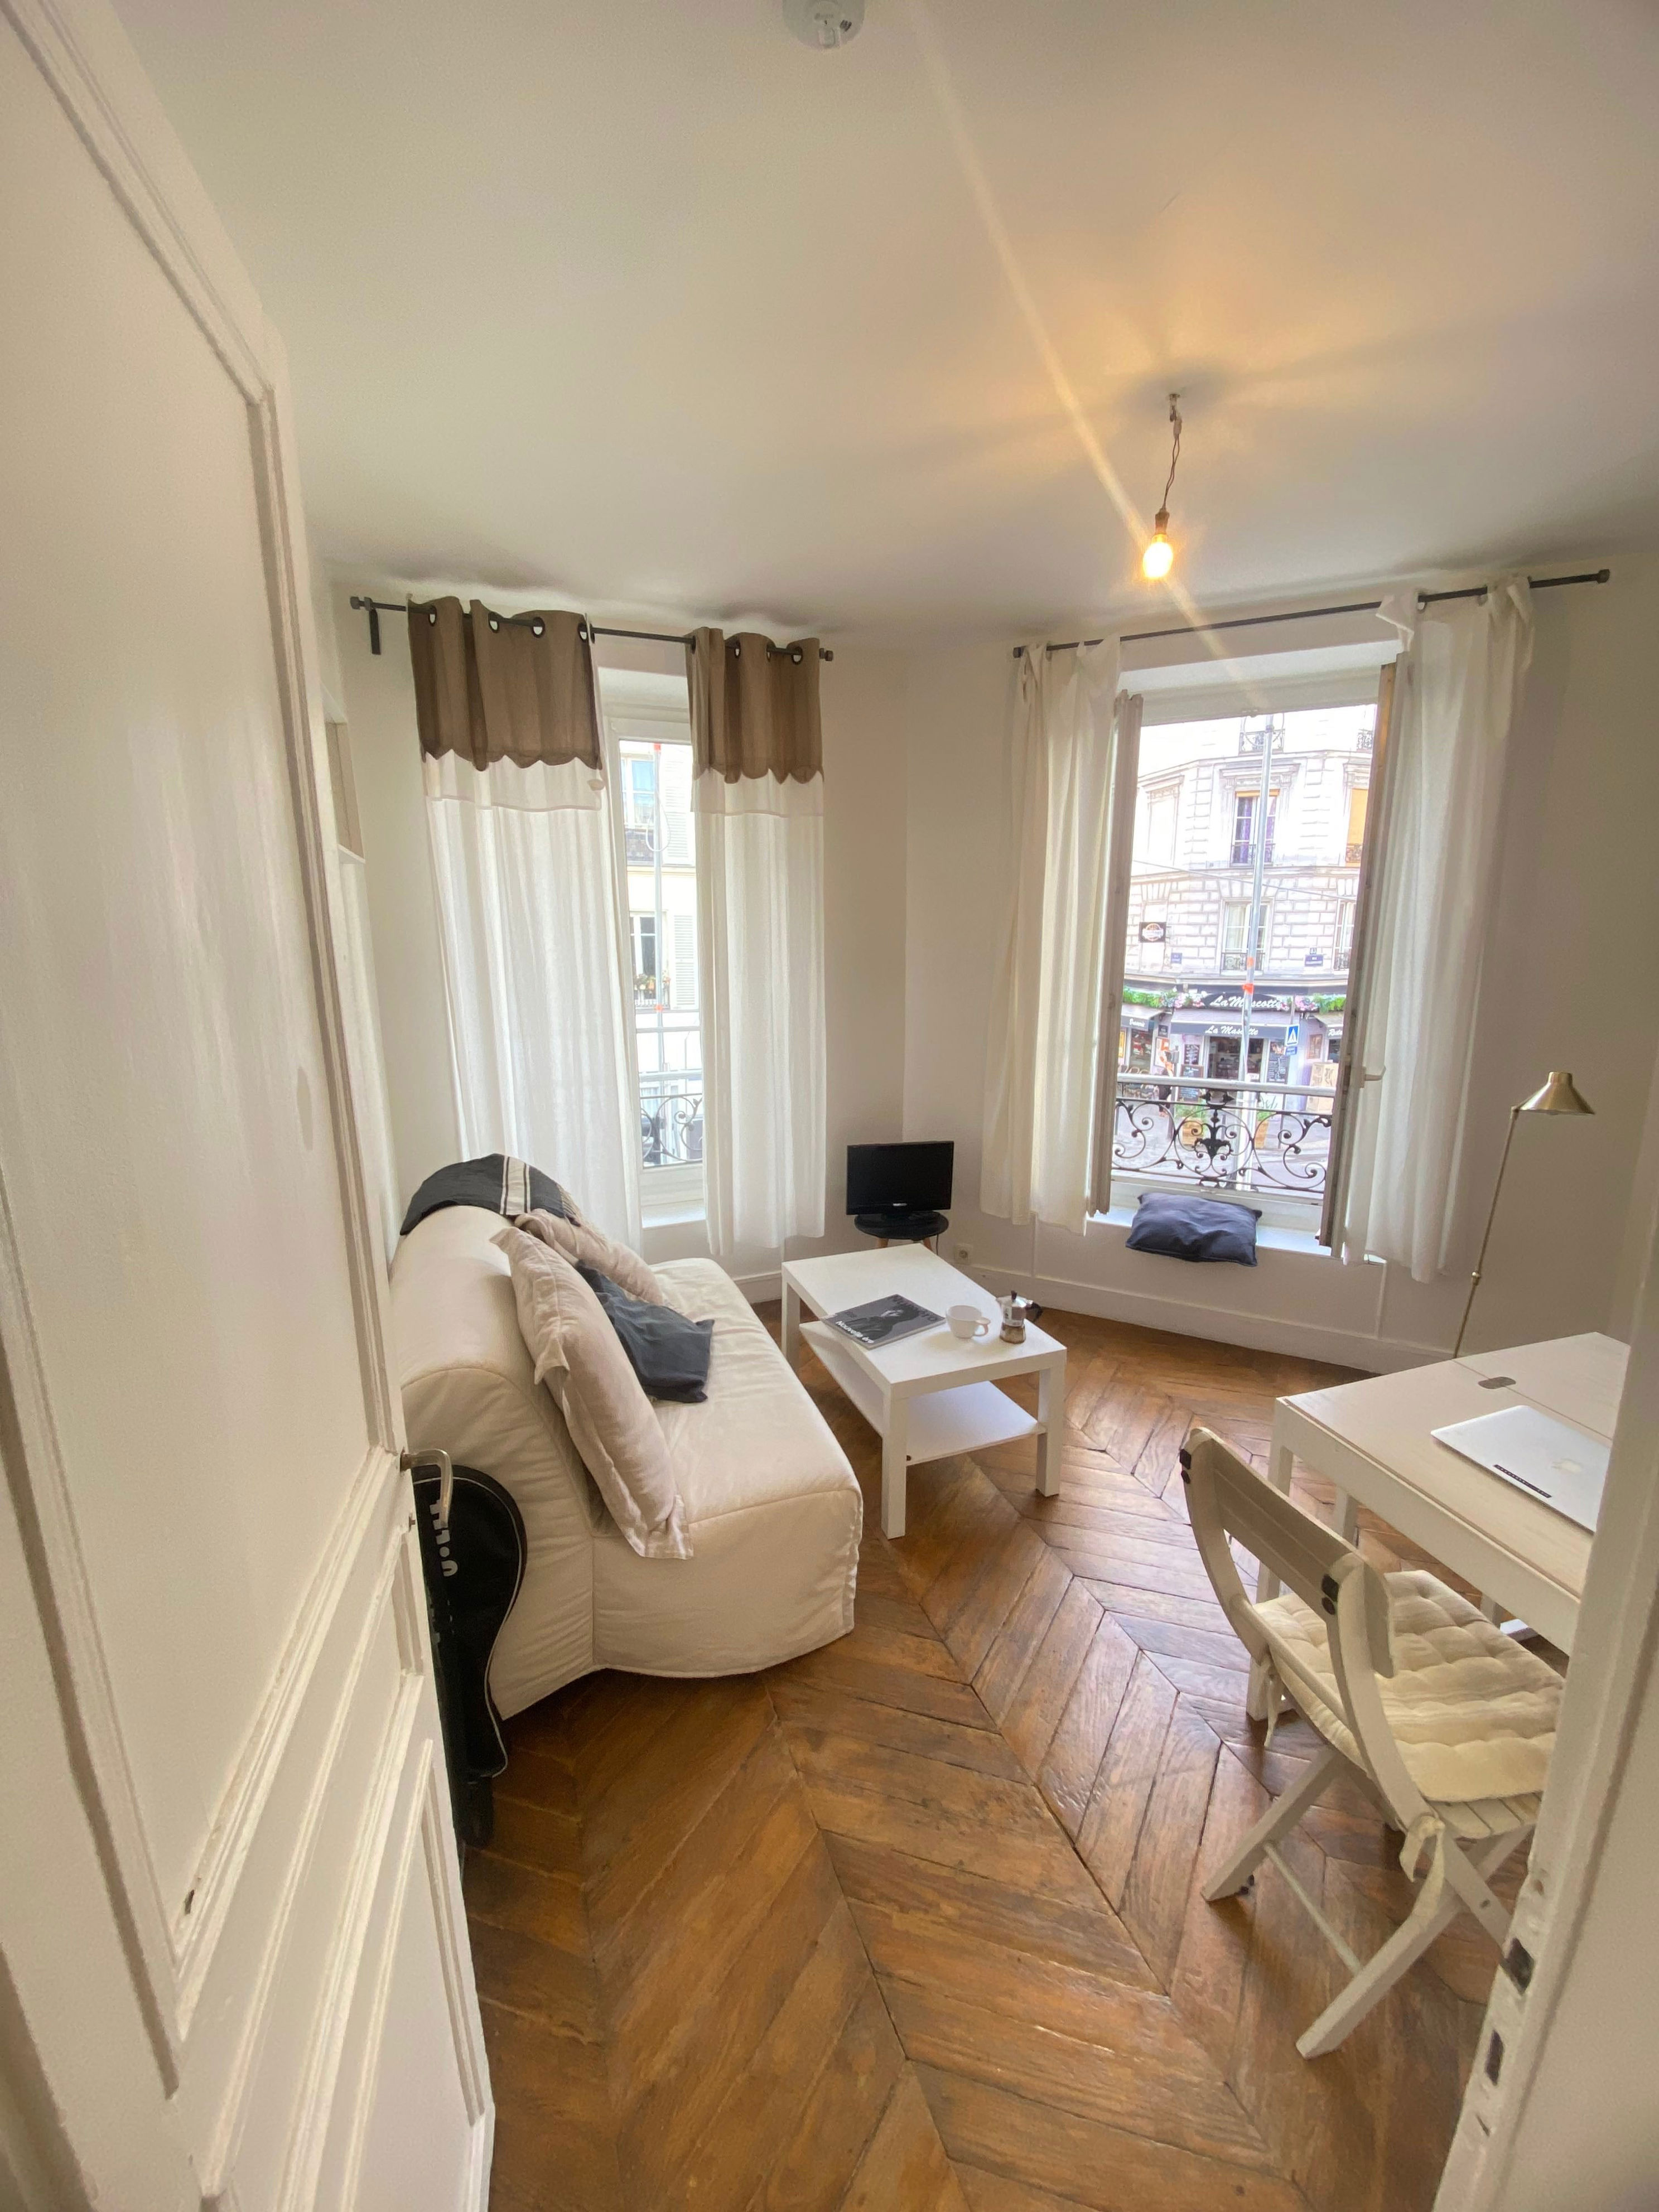 <p>Vous allez adorer ce joli Airbnb plein de charme situé dans les environs de Montmartre, juste à côté de la gare Jules Joffrin. Il possède un salon spacieux et lumineux où deux personnes peuvent dormir. Du côté de la chambre, vous pourrez également y loger deux personnes. Plusieurs lignes de métro sont accessibles à pied, de quoi profiter de Paris comme de véritables locaux.</p> <div class="callout"><p><a href="https://airbnb.pvxt.net/DKGZqq" title="Réservez ici">Réservez ici</a></p> </div><p>Inscrivez-vous à l’une de nos newsletters pour recevoir toute l’actualité mode, culture et les recommandations shopping de GQ directement dans votre boite mail.</p><a href="https://newsletter.gqmagazine.fr/?sourceCode=msnsend">S’inscrire ici</a>